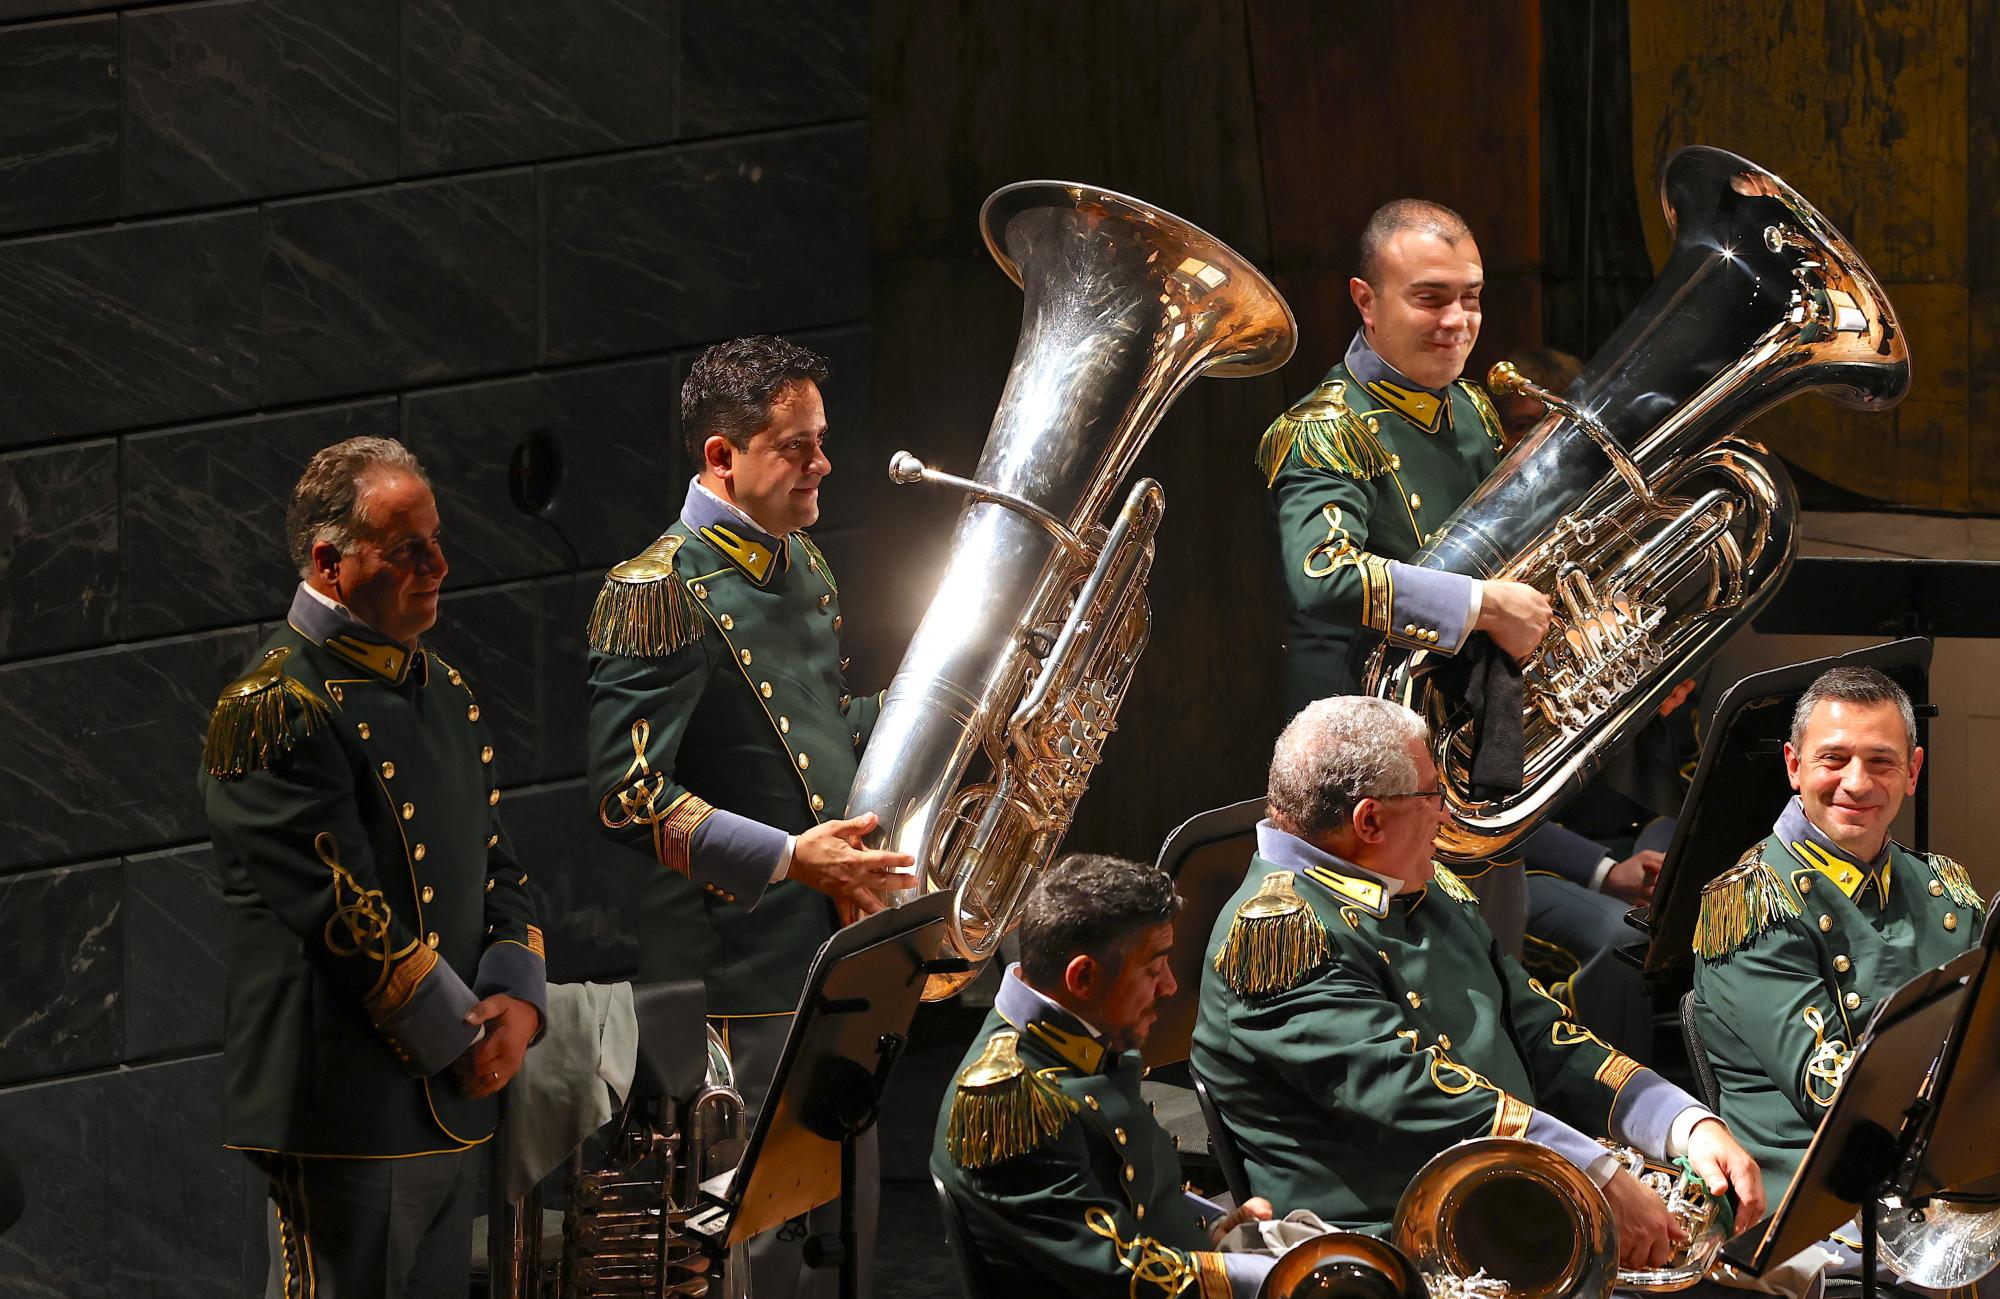 La Banda musicale della Guardia di Finanza al Teatro Carlo Felice: gli ottoni